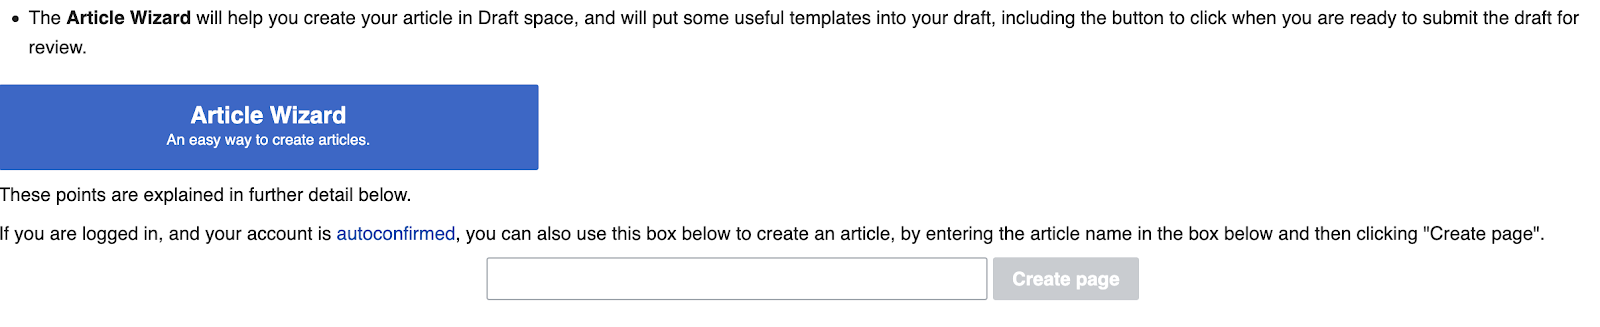 ساخت ویکی پدیا شرکت - صفحه خود را بسازید.